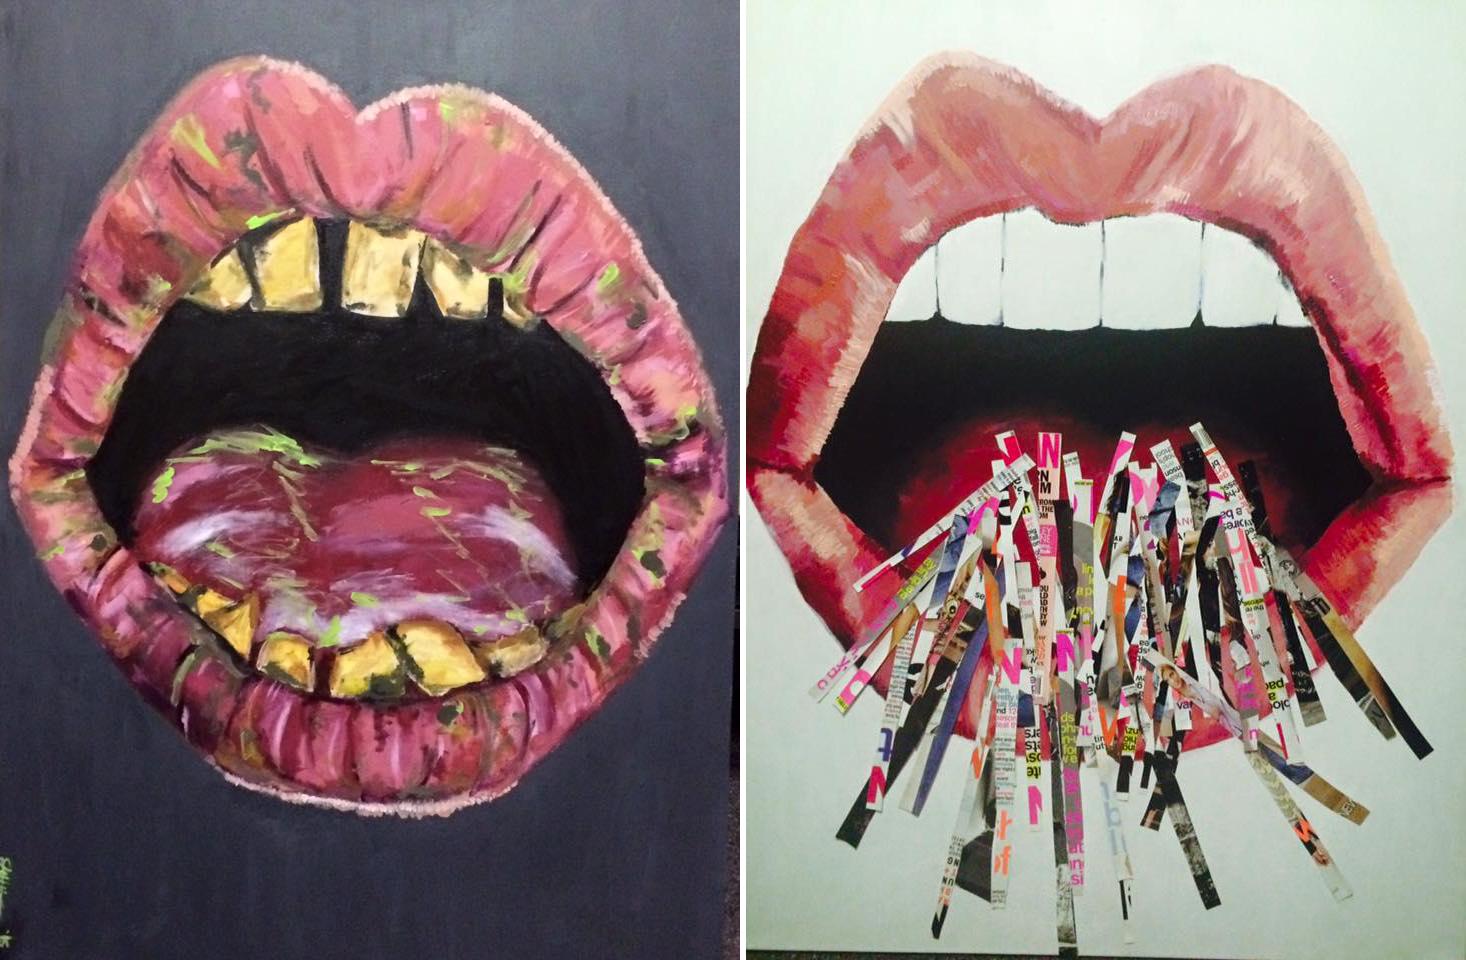 Eat Me Pretty
Paintings by Elizabeth Kelly